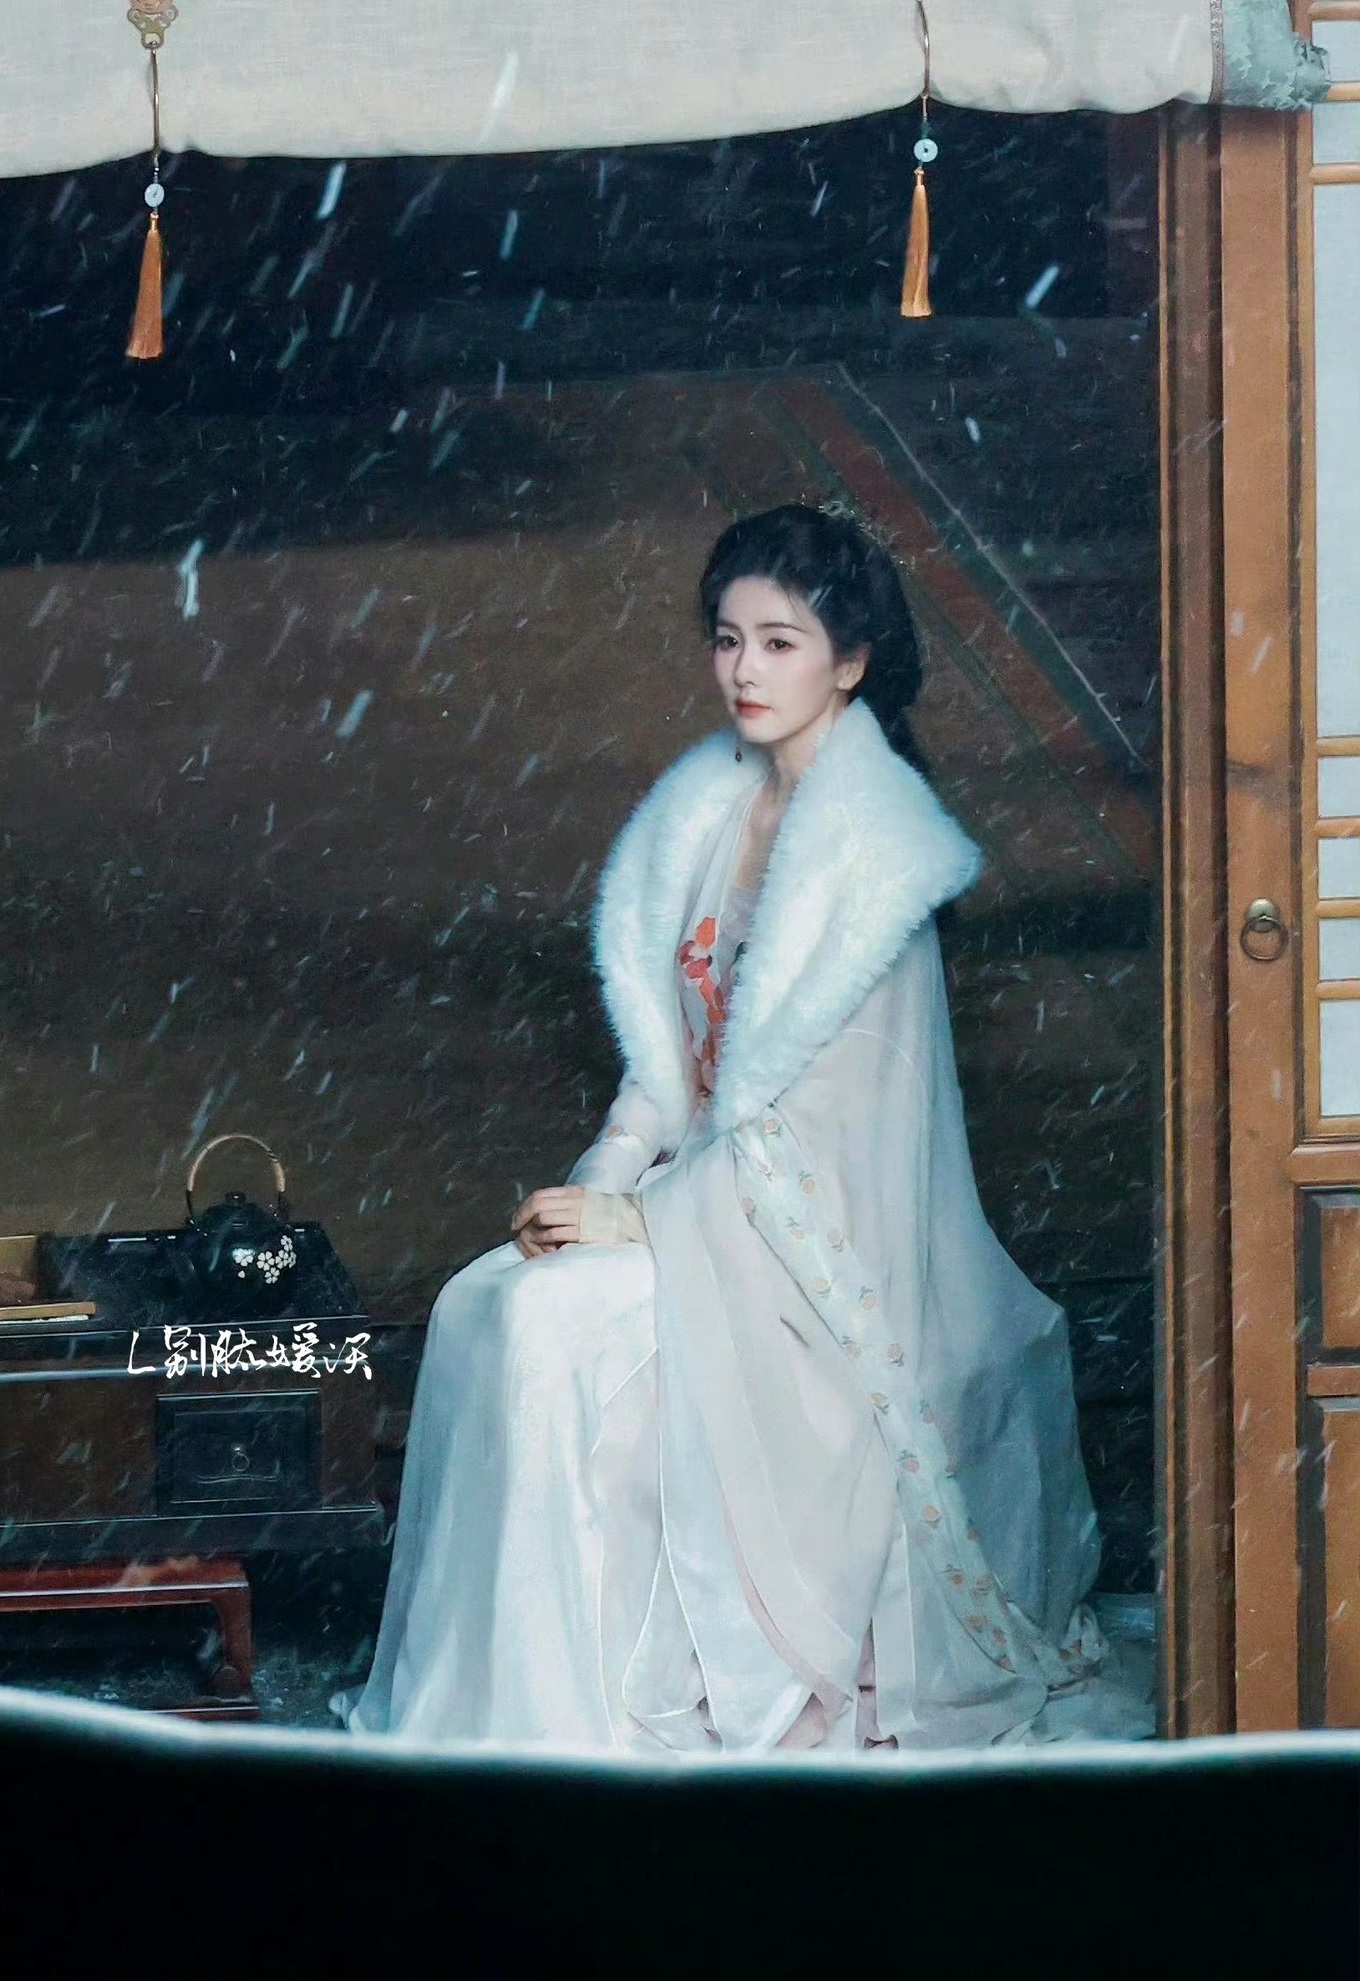 Mỹ nhân Hoa ngữ đẹp như thần nữ dưới tuyết ở phim mới, khung cảnh buồn đến nao lòng - Ảnh 4.